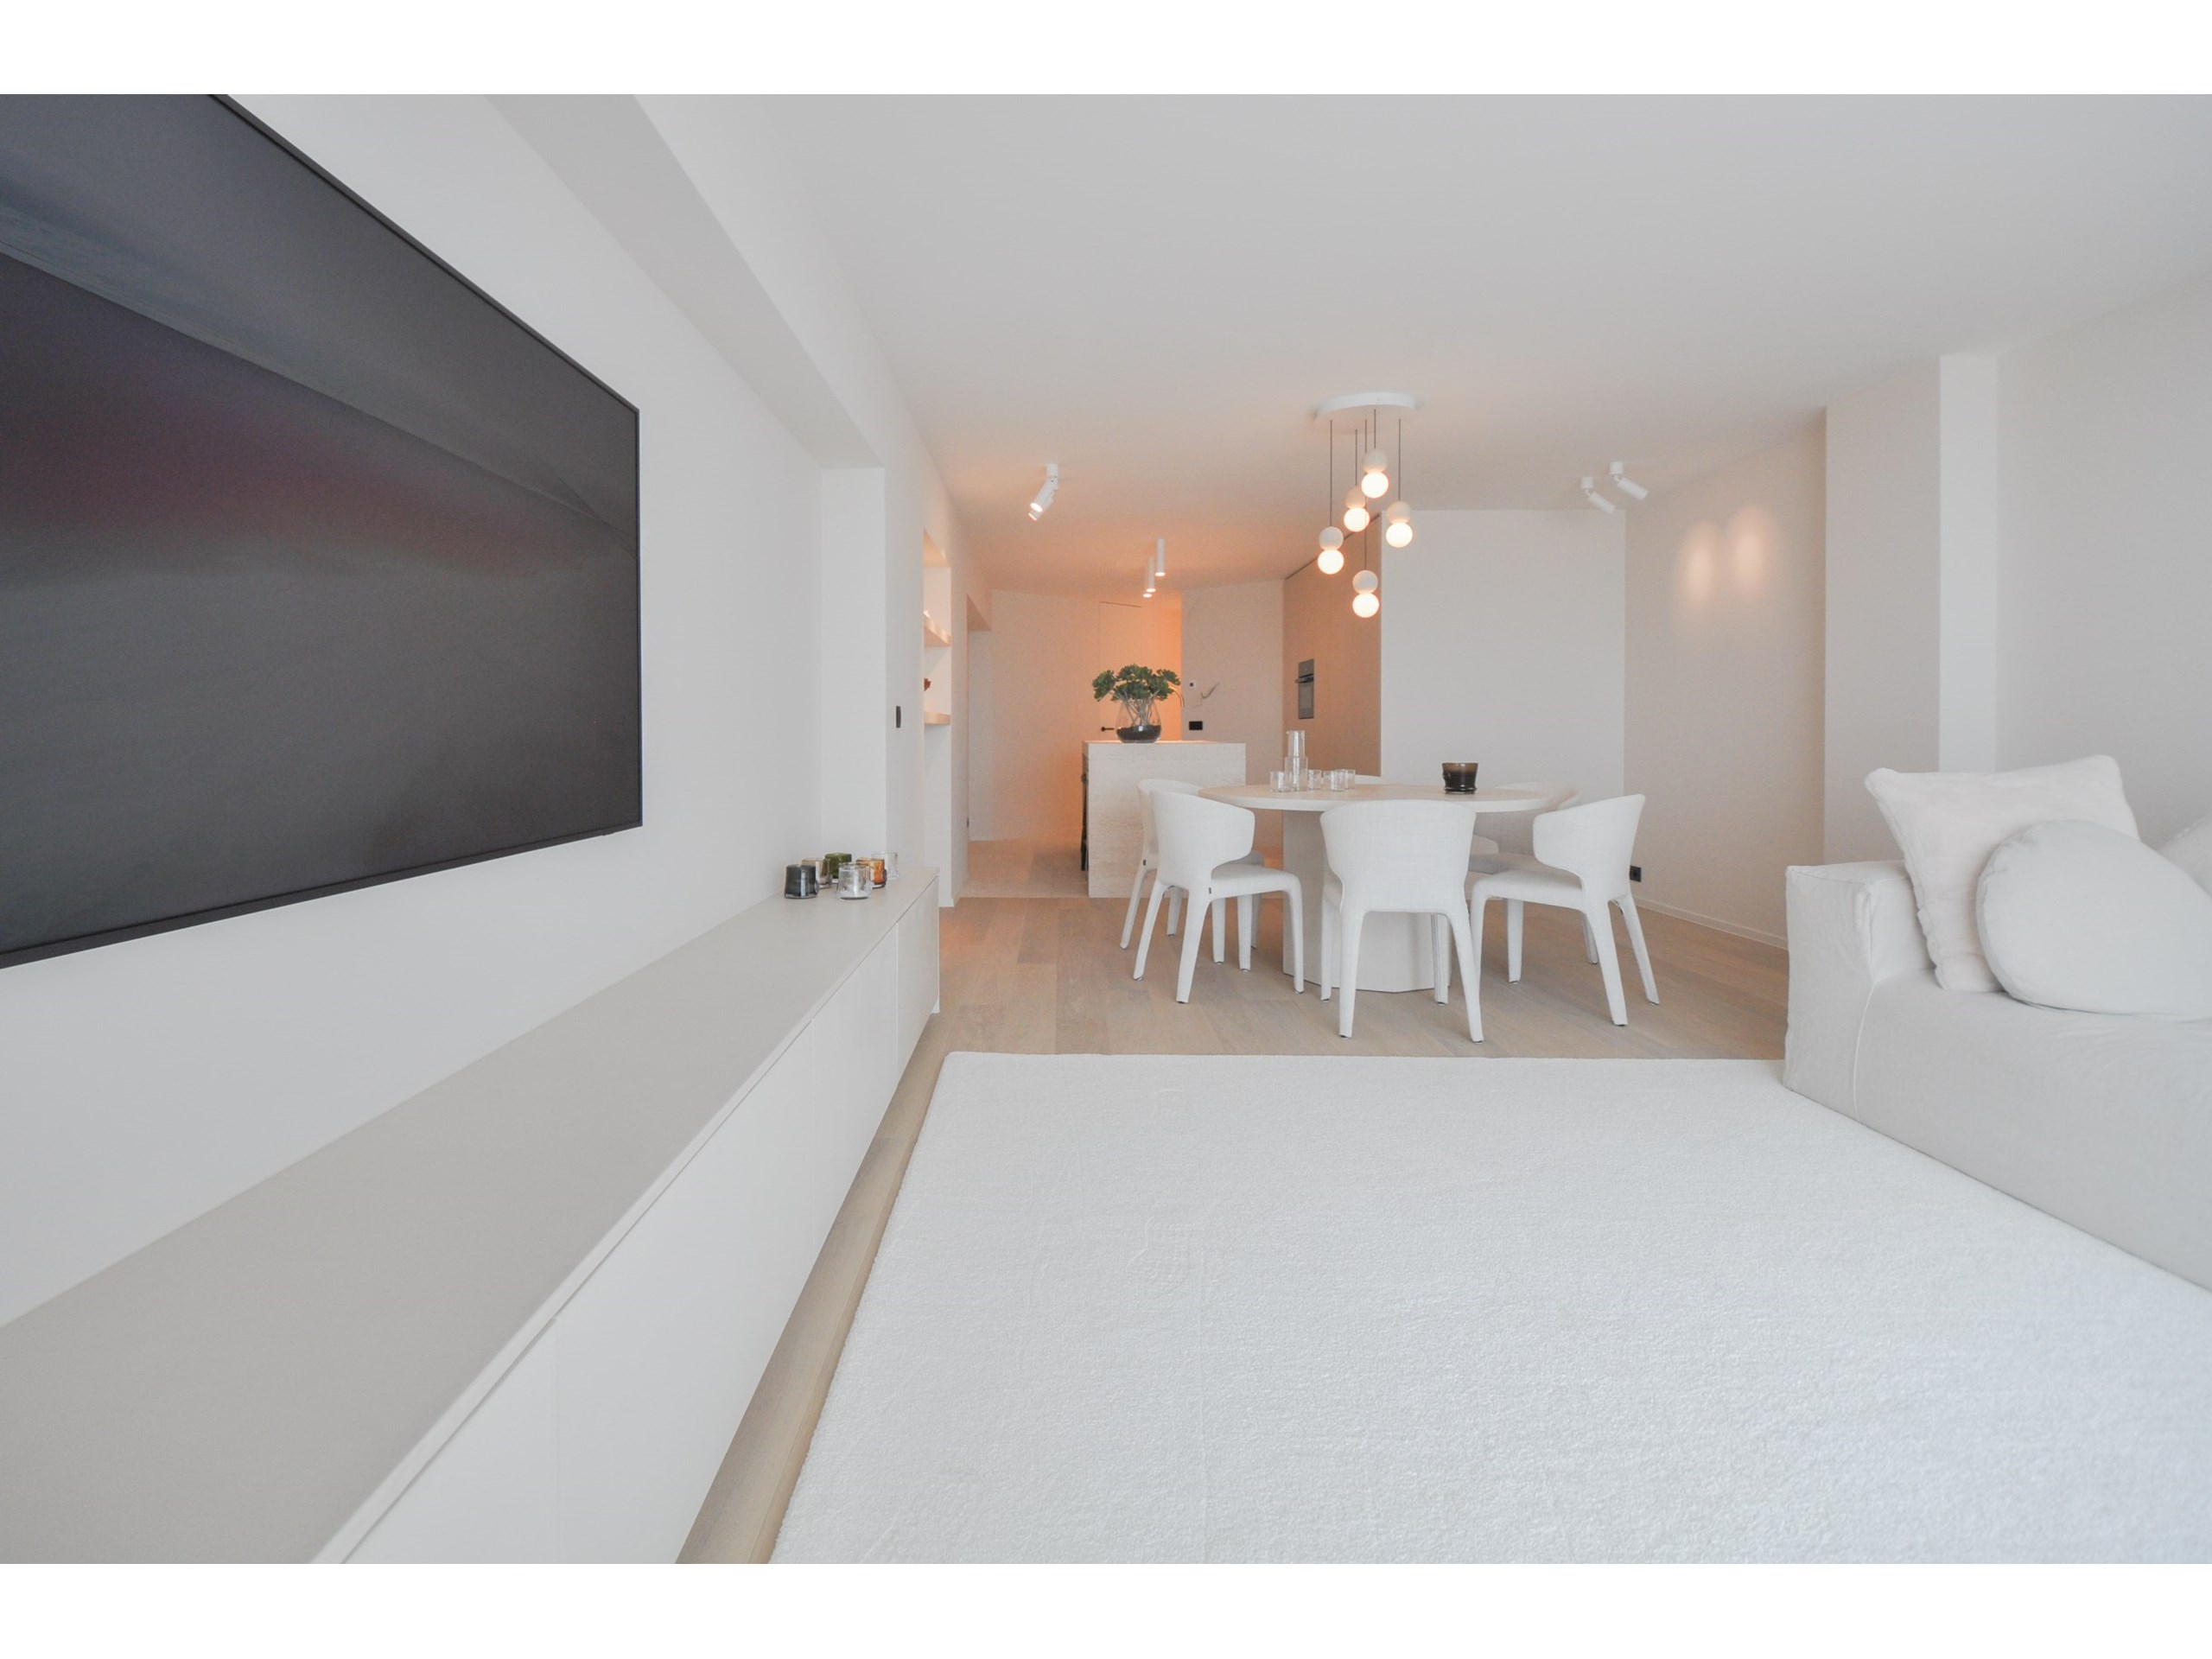 Subliem appartement met frontaal zeezicht afgewerkt met zeer kwalitatieve materialen. 